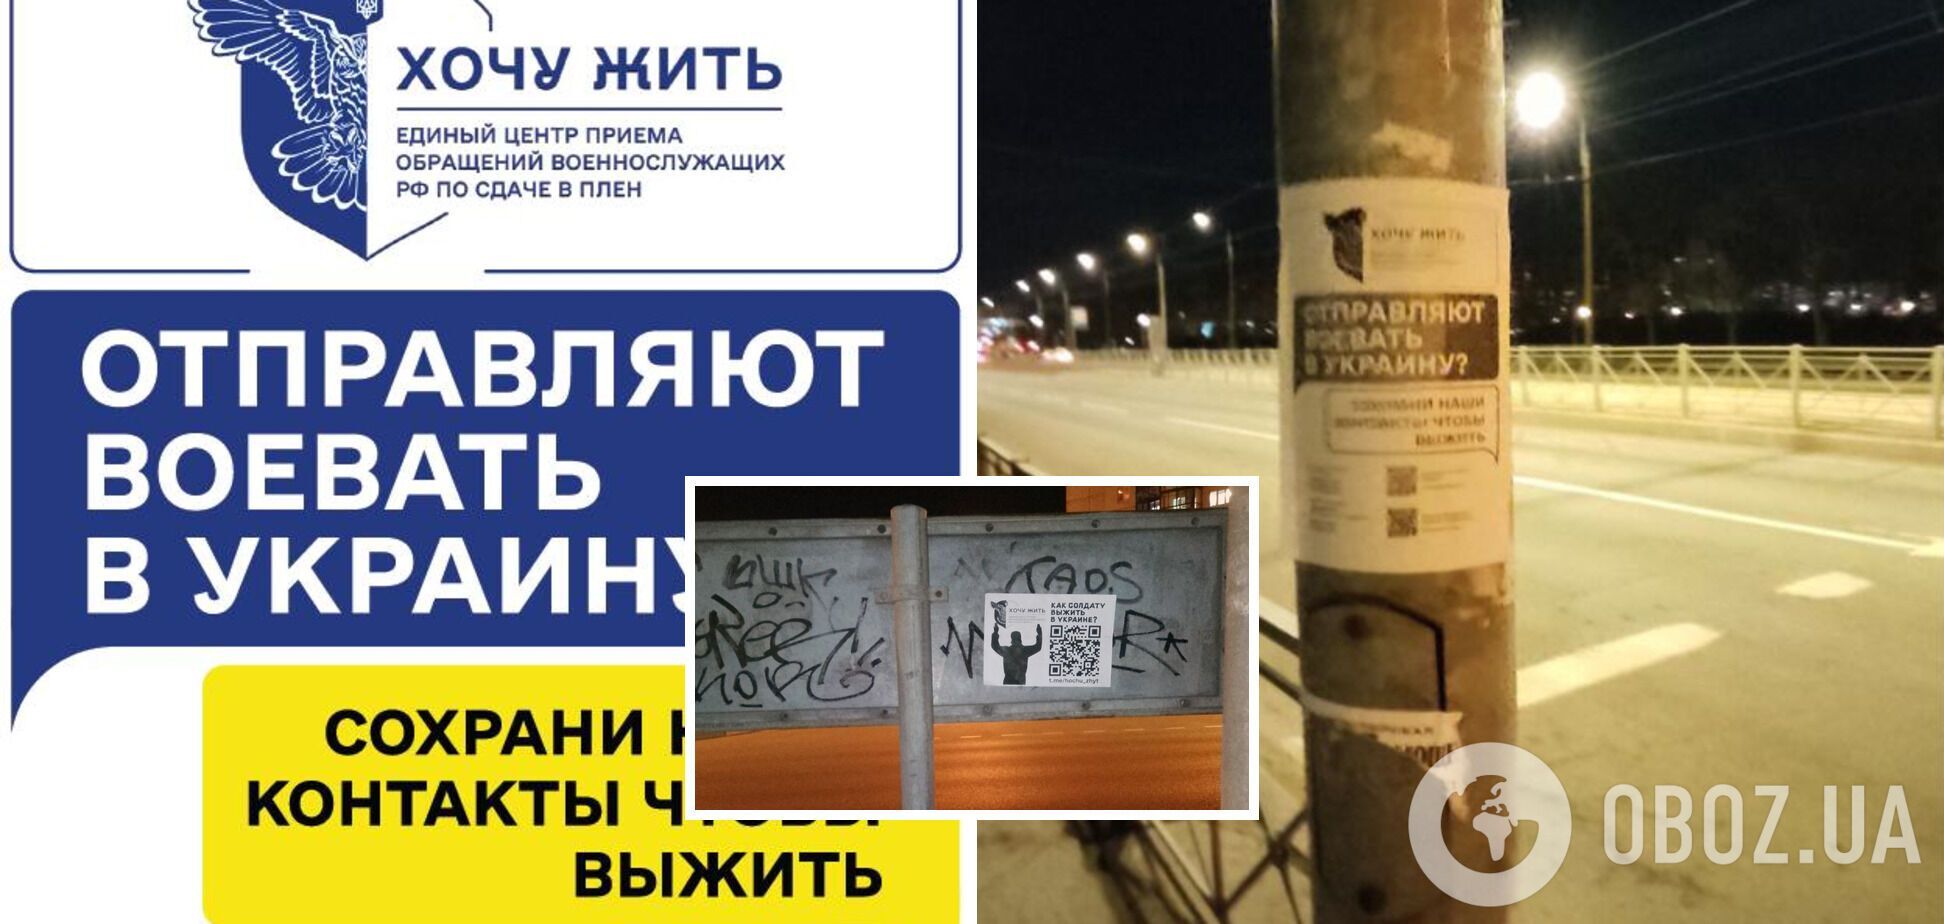 'Отправляют воевать в Украину?' В Санкт-Петербурге и Ленинградской области РФ появились открытки с призывом сдаваться в плен